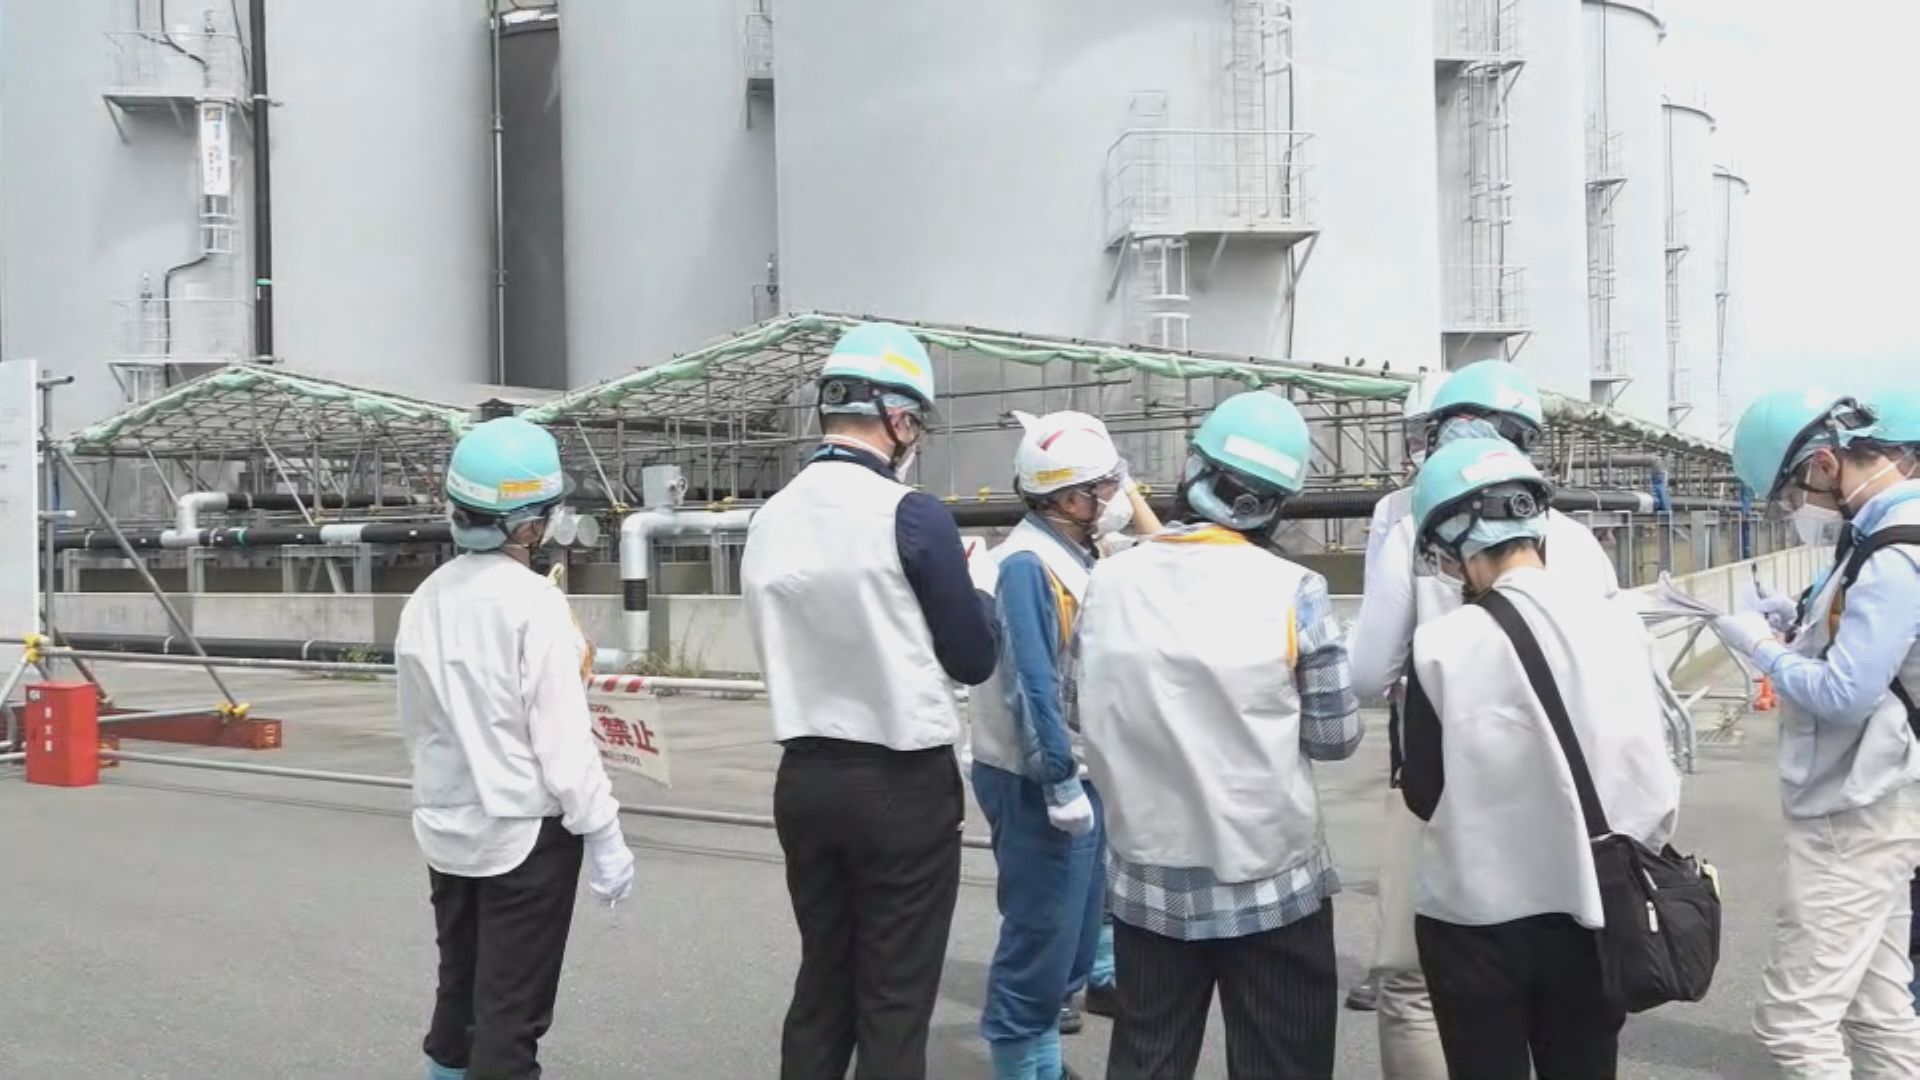 本台進入福島核電廠 東電承認核污水排海計劃行不通沒有後備方案